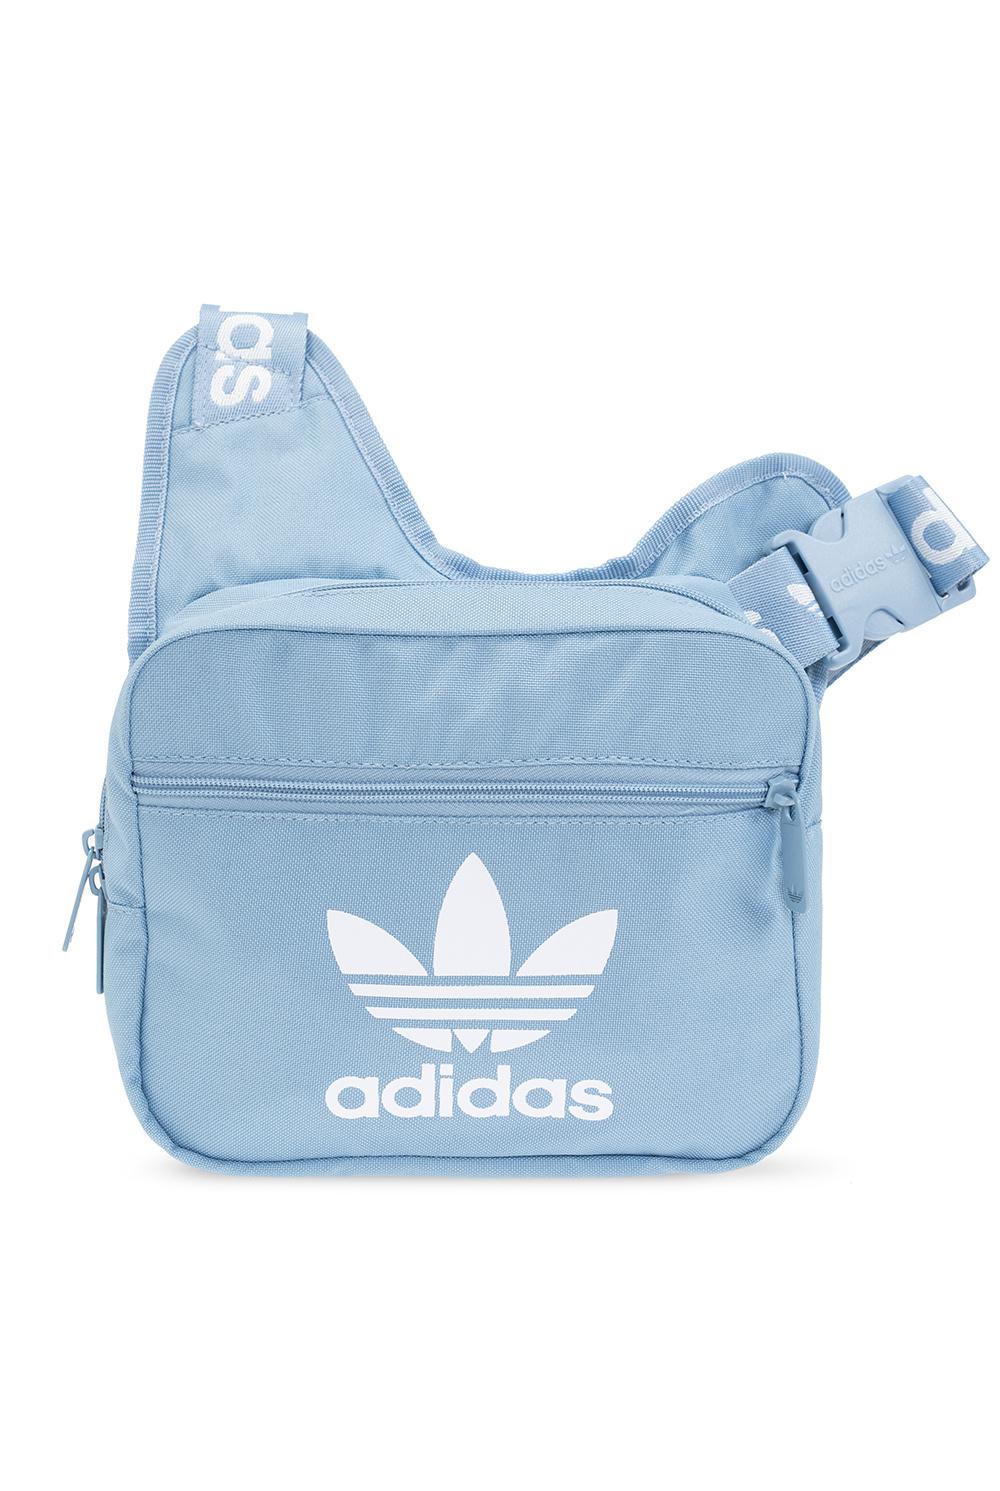 adidas Originals Shoulder Bag With Logo in Blue for Men | Lyst